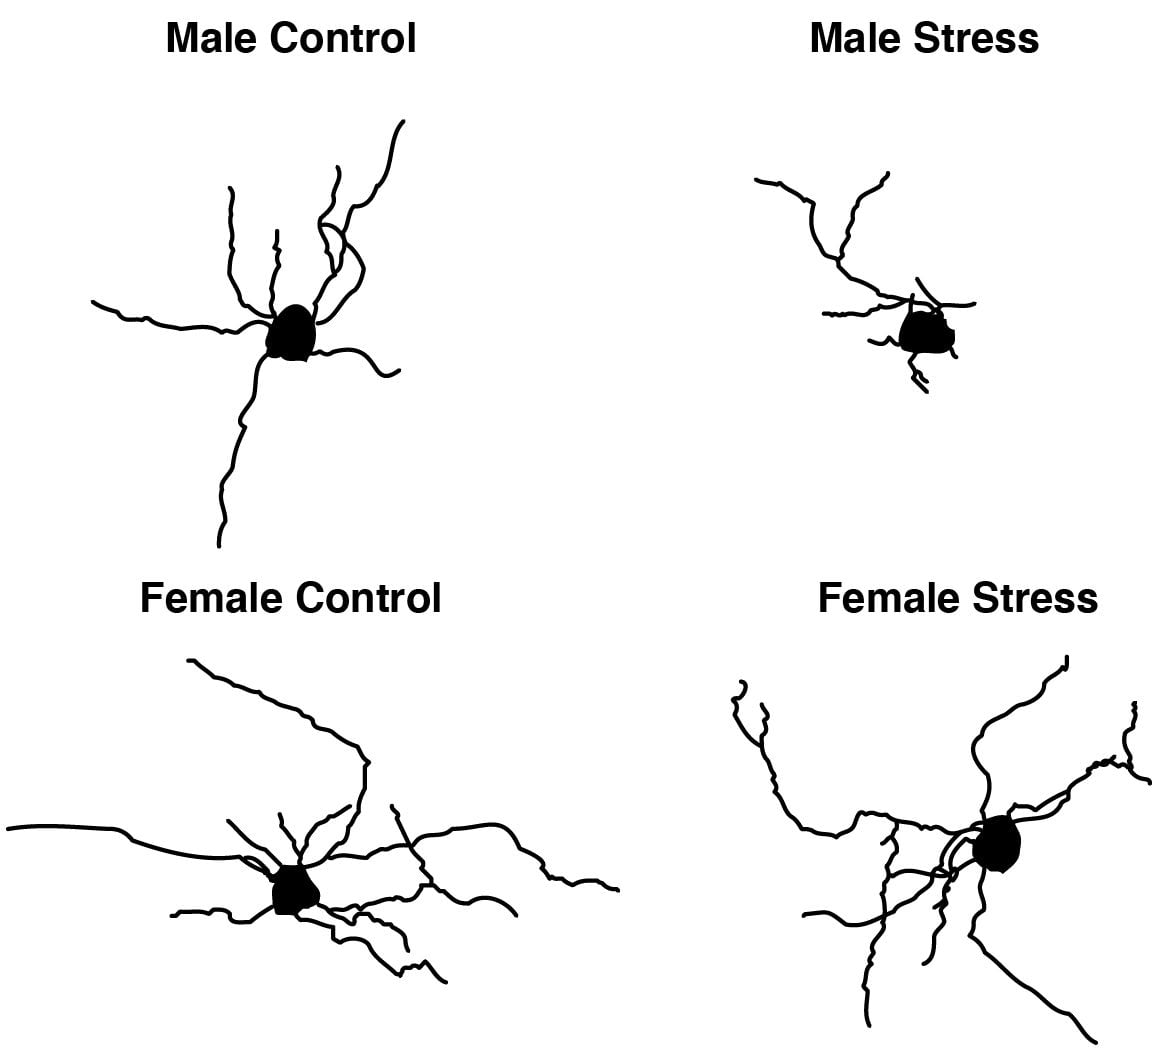 Una presentación esquelética de oligodendrocitos individuales ejemplifica cómo el estrés produce diferentes efectos en la estructura de las células cerebrales en ratones machos y hembras  (Inst. Weizmann)